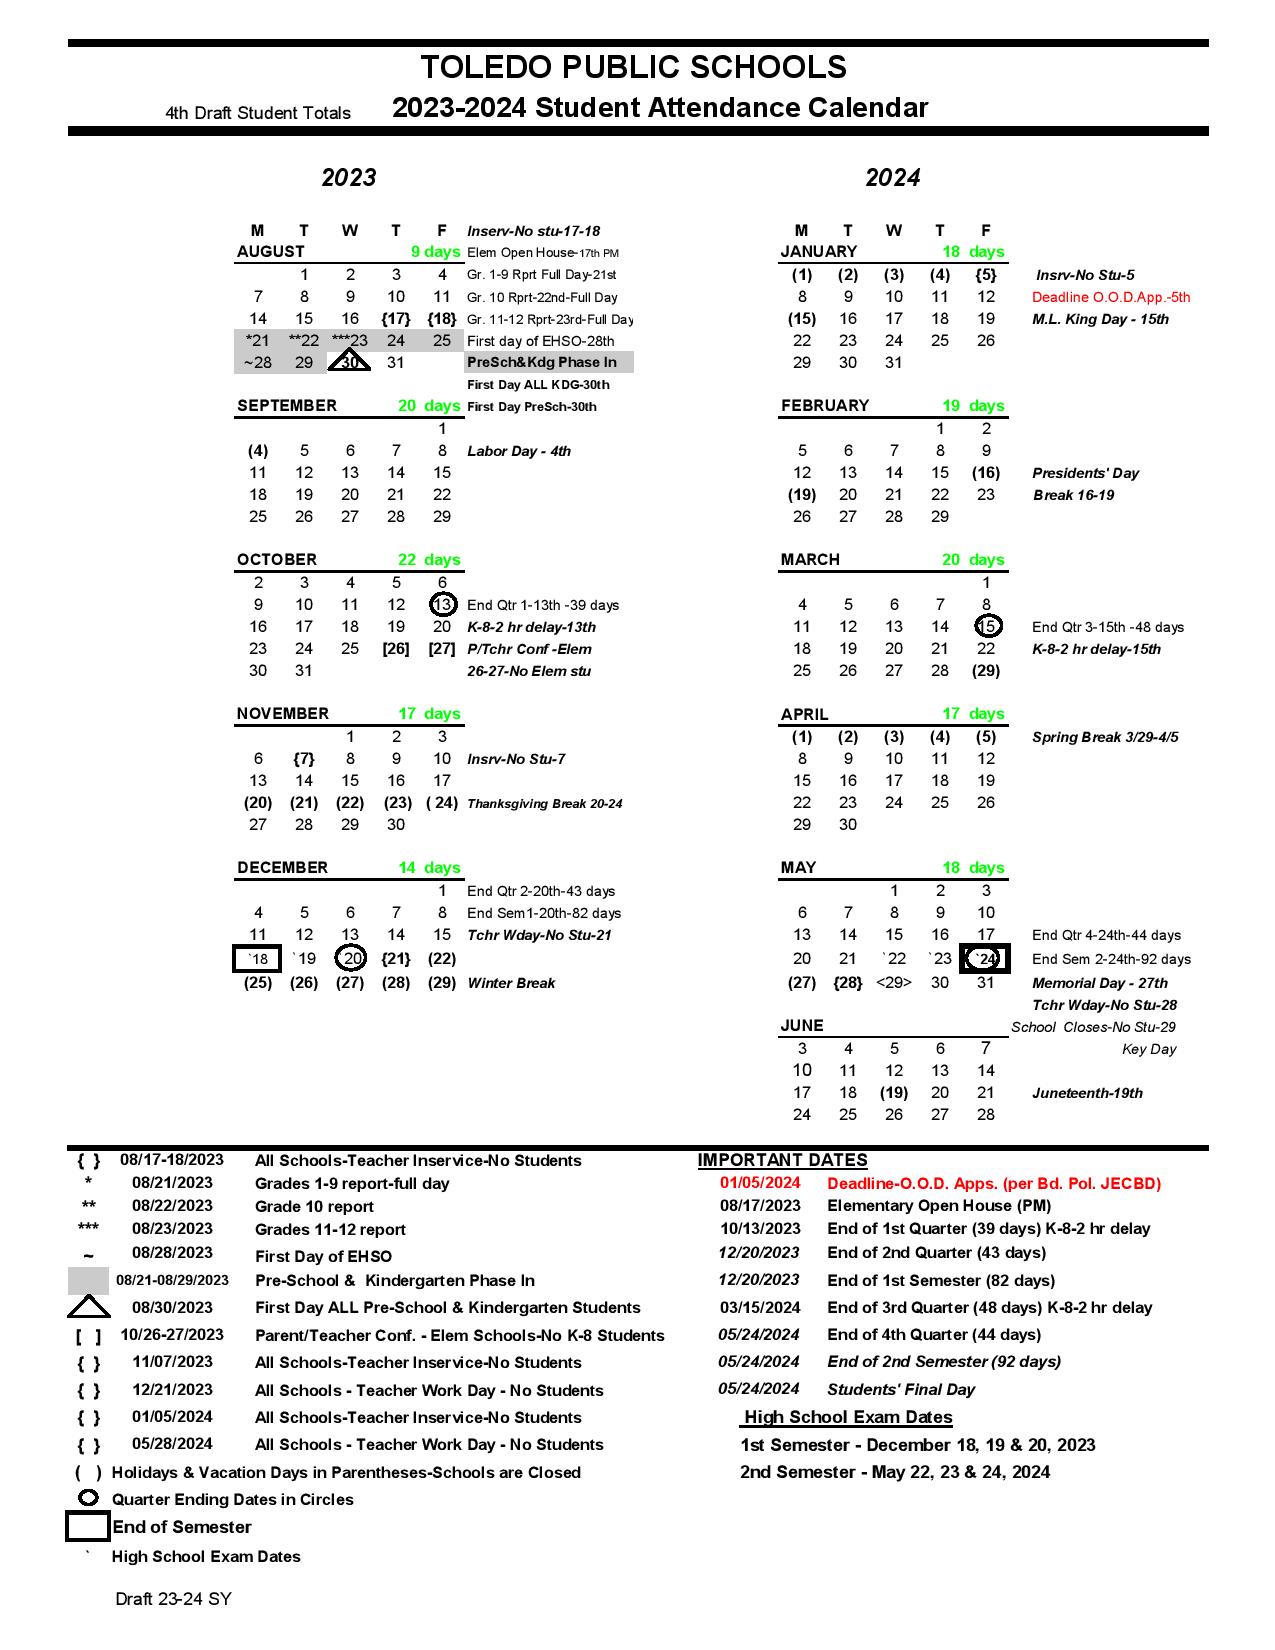 Toledo Public Schools Calendar 20232024 in PDF